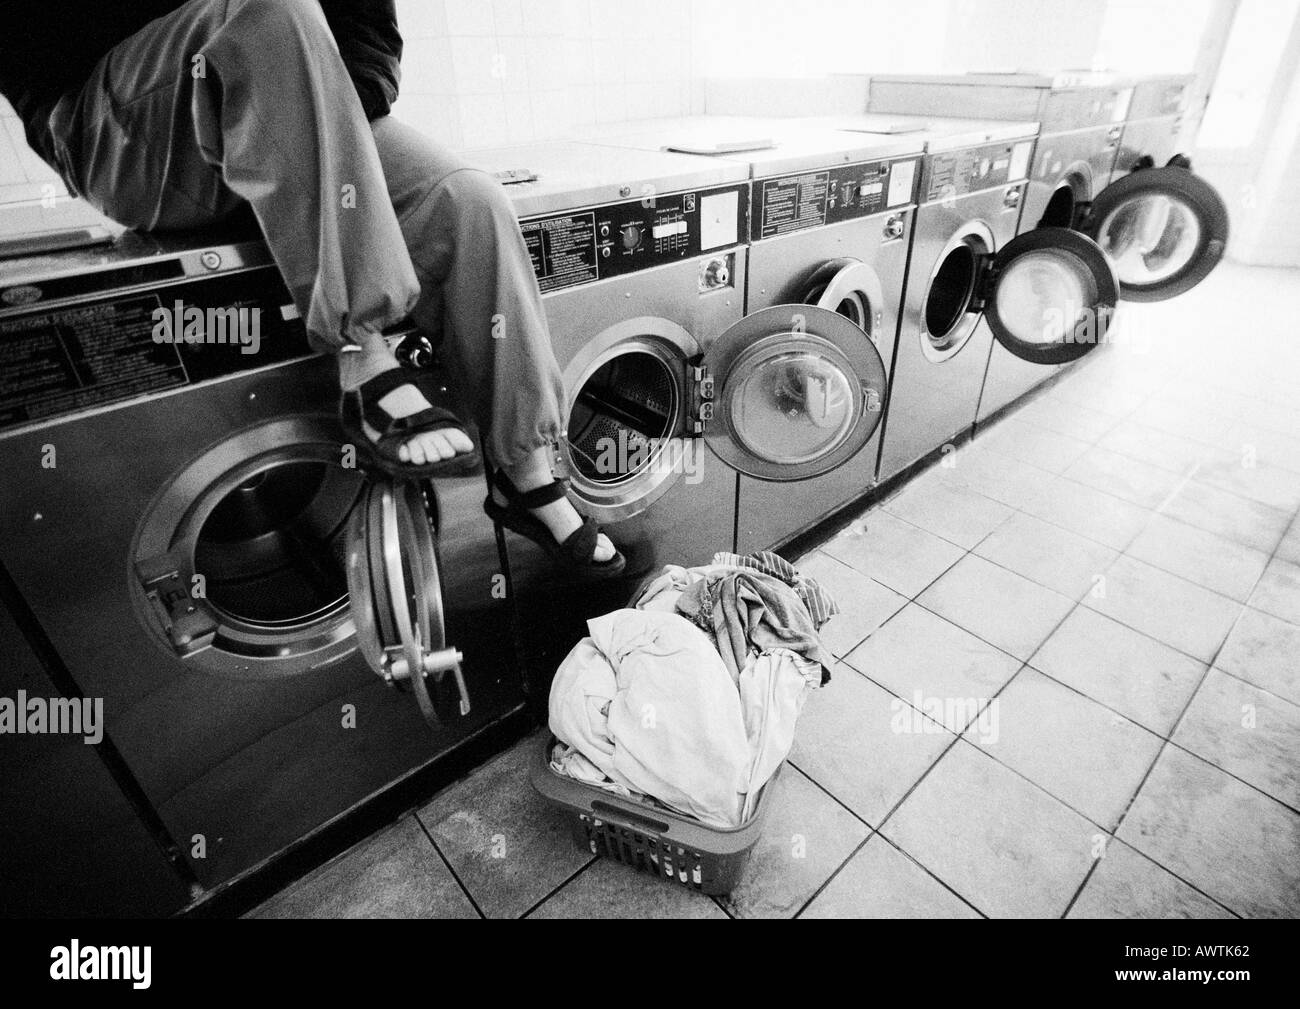 Sitzenden auf Waschmaschine im Waschsalon gesehen, niedrigen Bereich, b&w Stockfoto